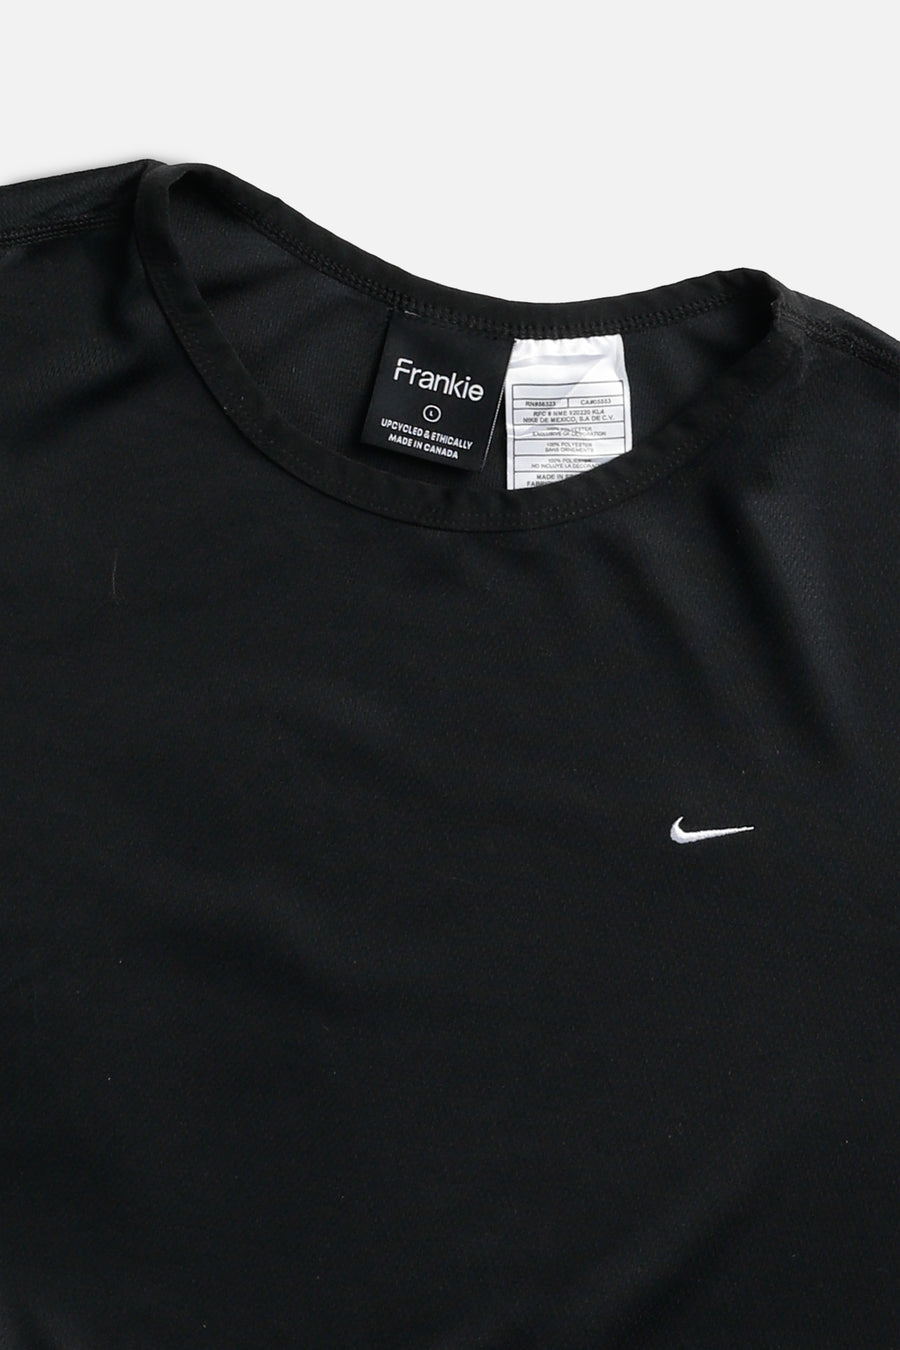 Rework Nike Crop Long Sleeve Tee - L